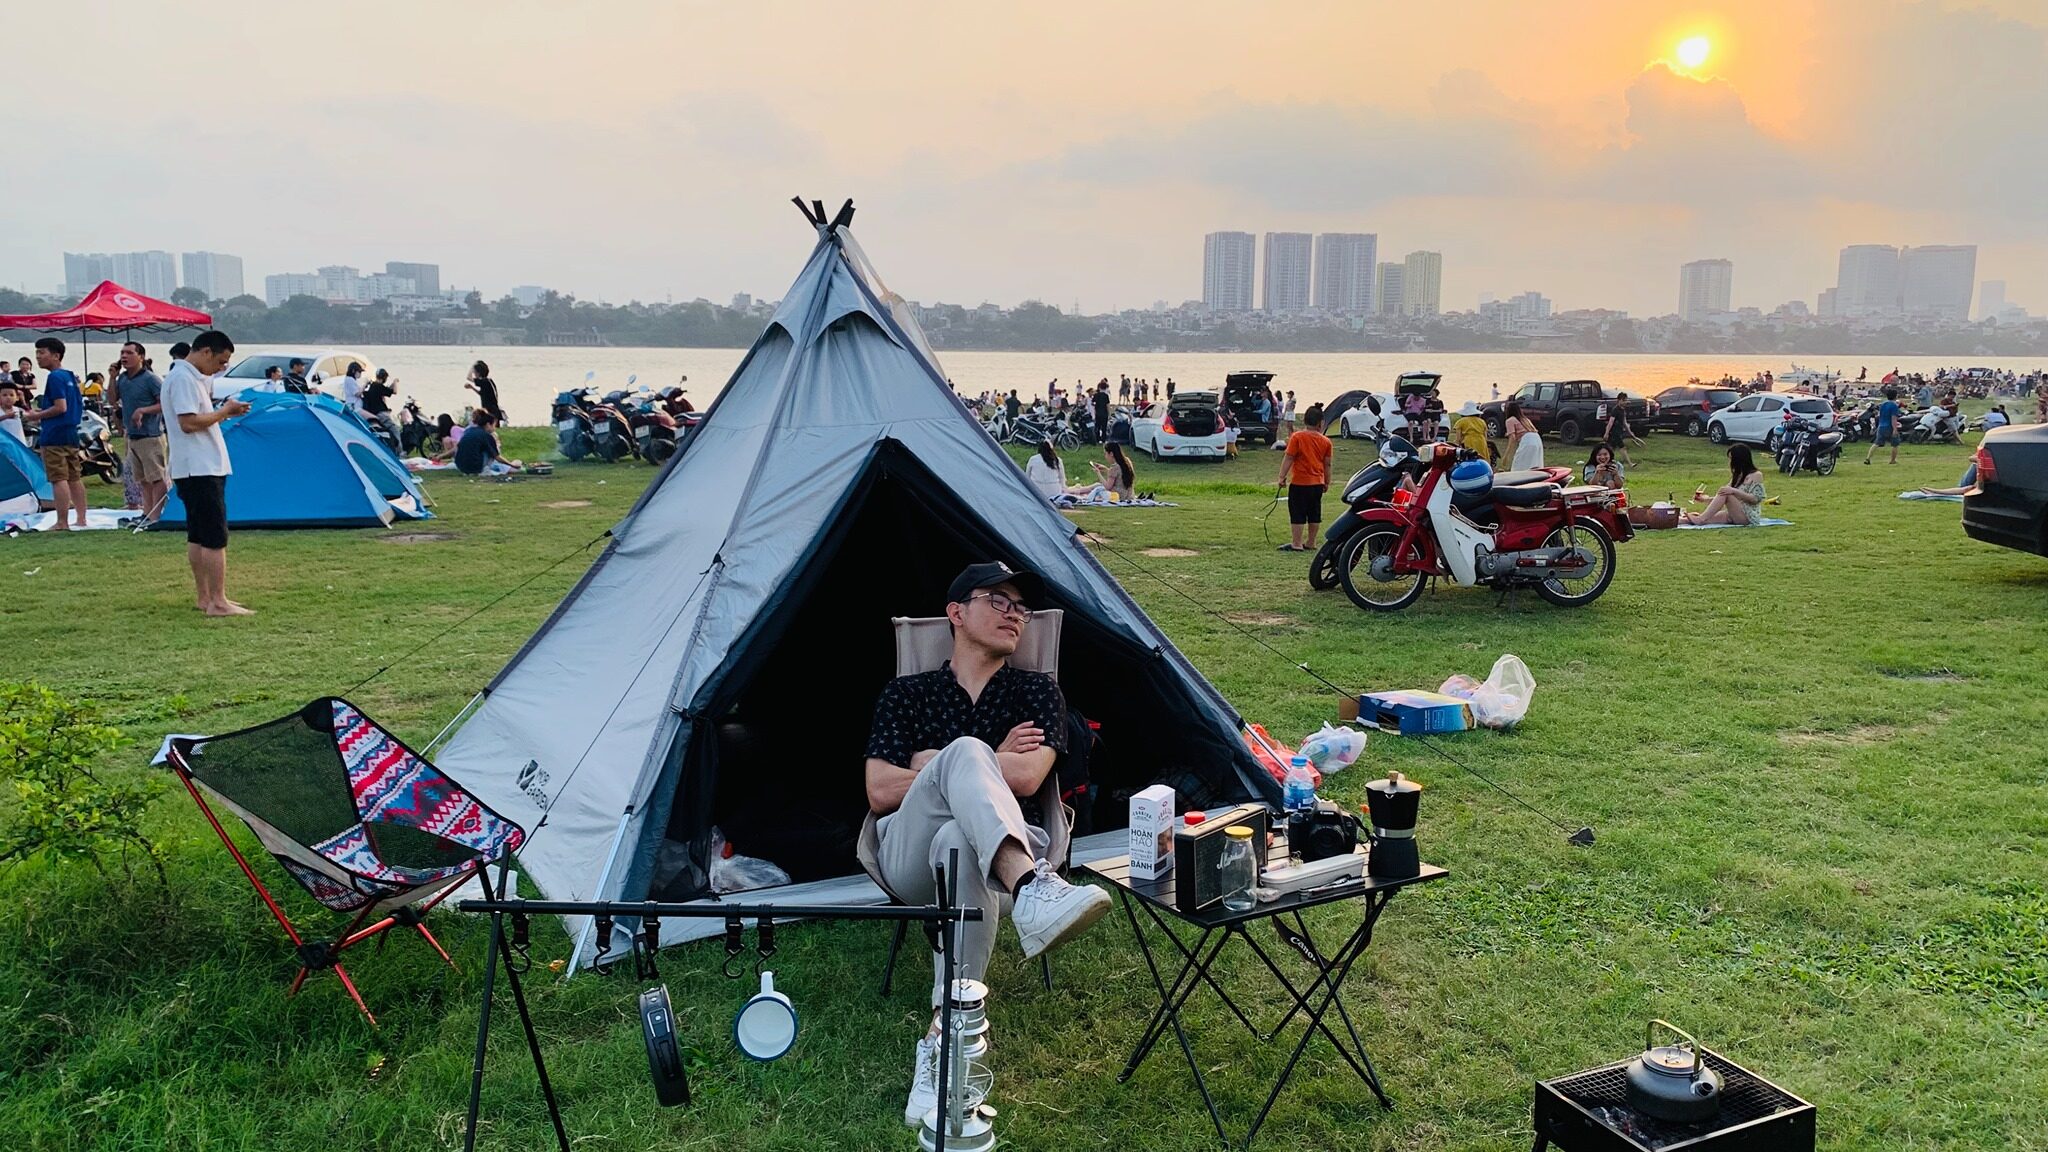 Camping gần Hà Nội